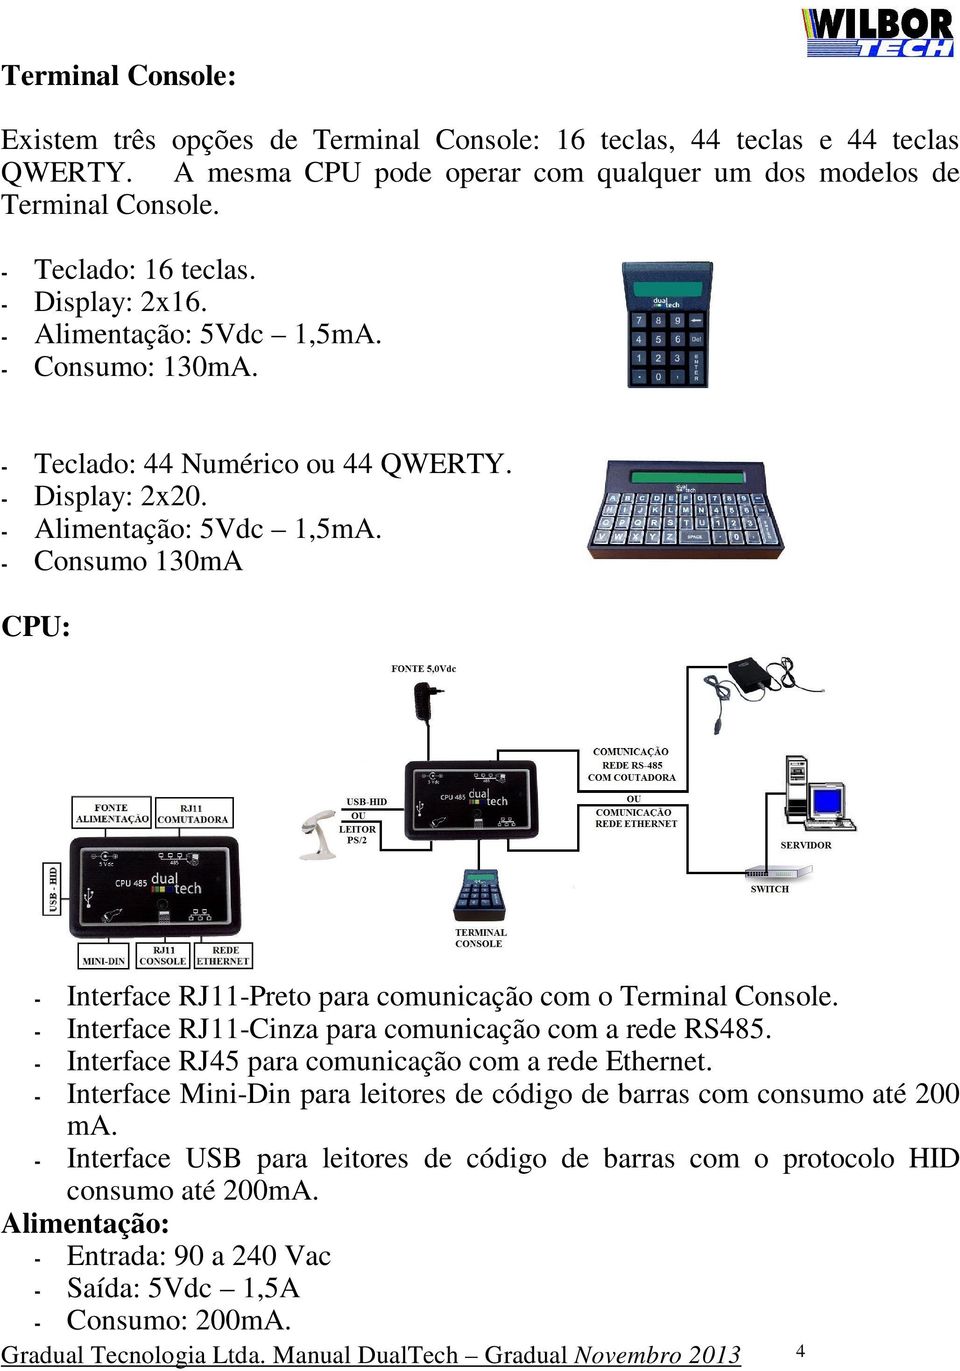 - Interface RJ11-Cinza para comunicação com a rede RS485. - Interface RJ45 para comunicação com a rede Ethernet. - Interface Mini-Din para leitores de código de barras com consumo até 200 ma.